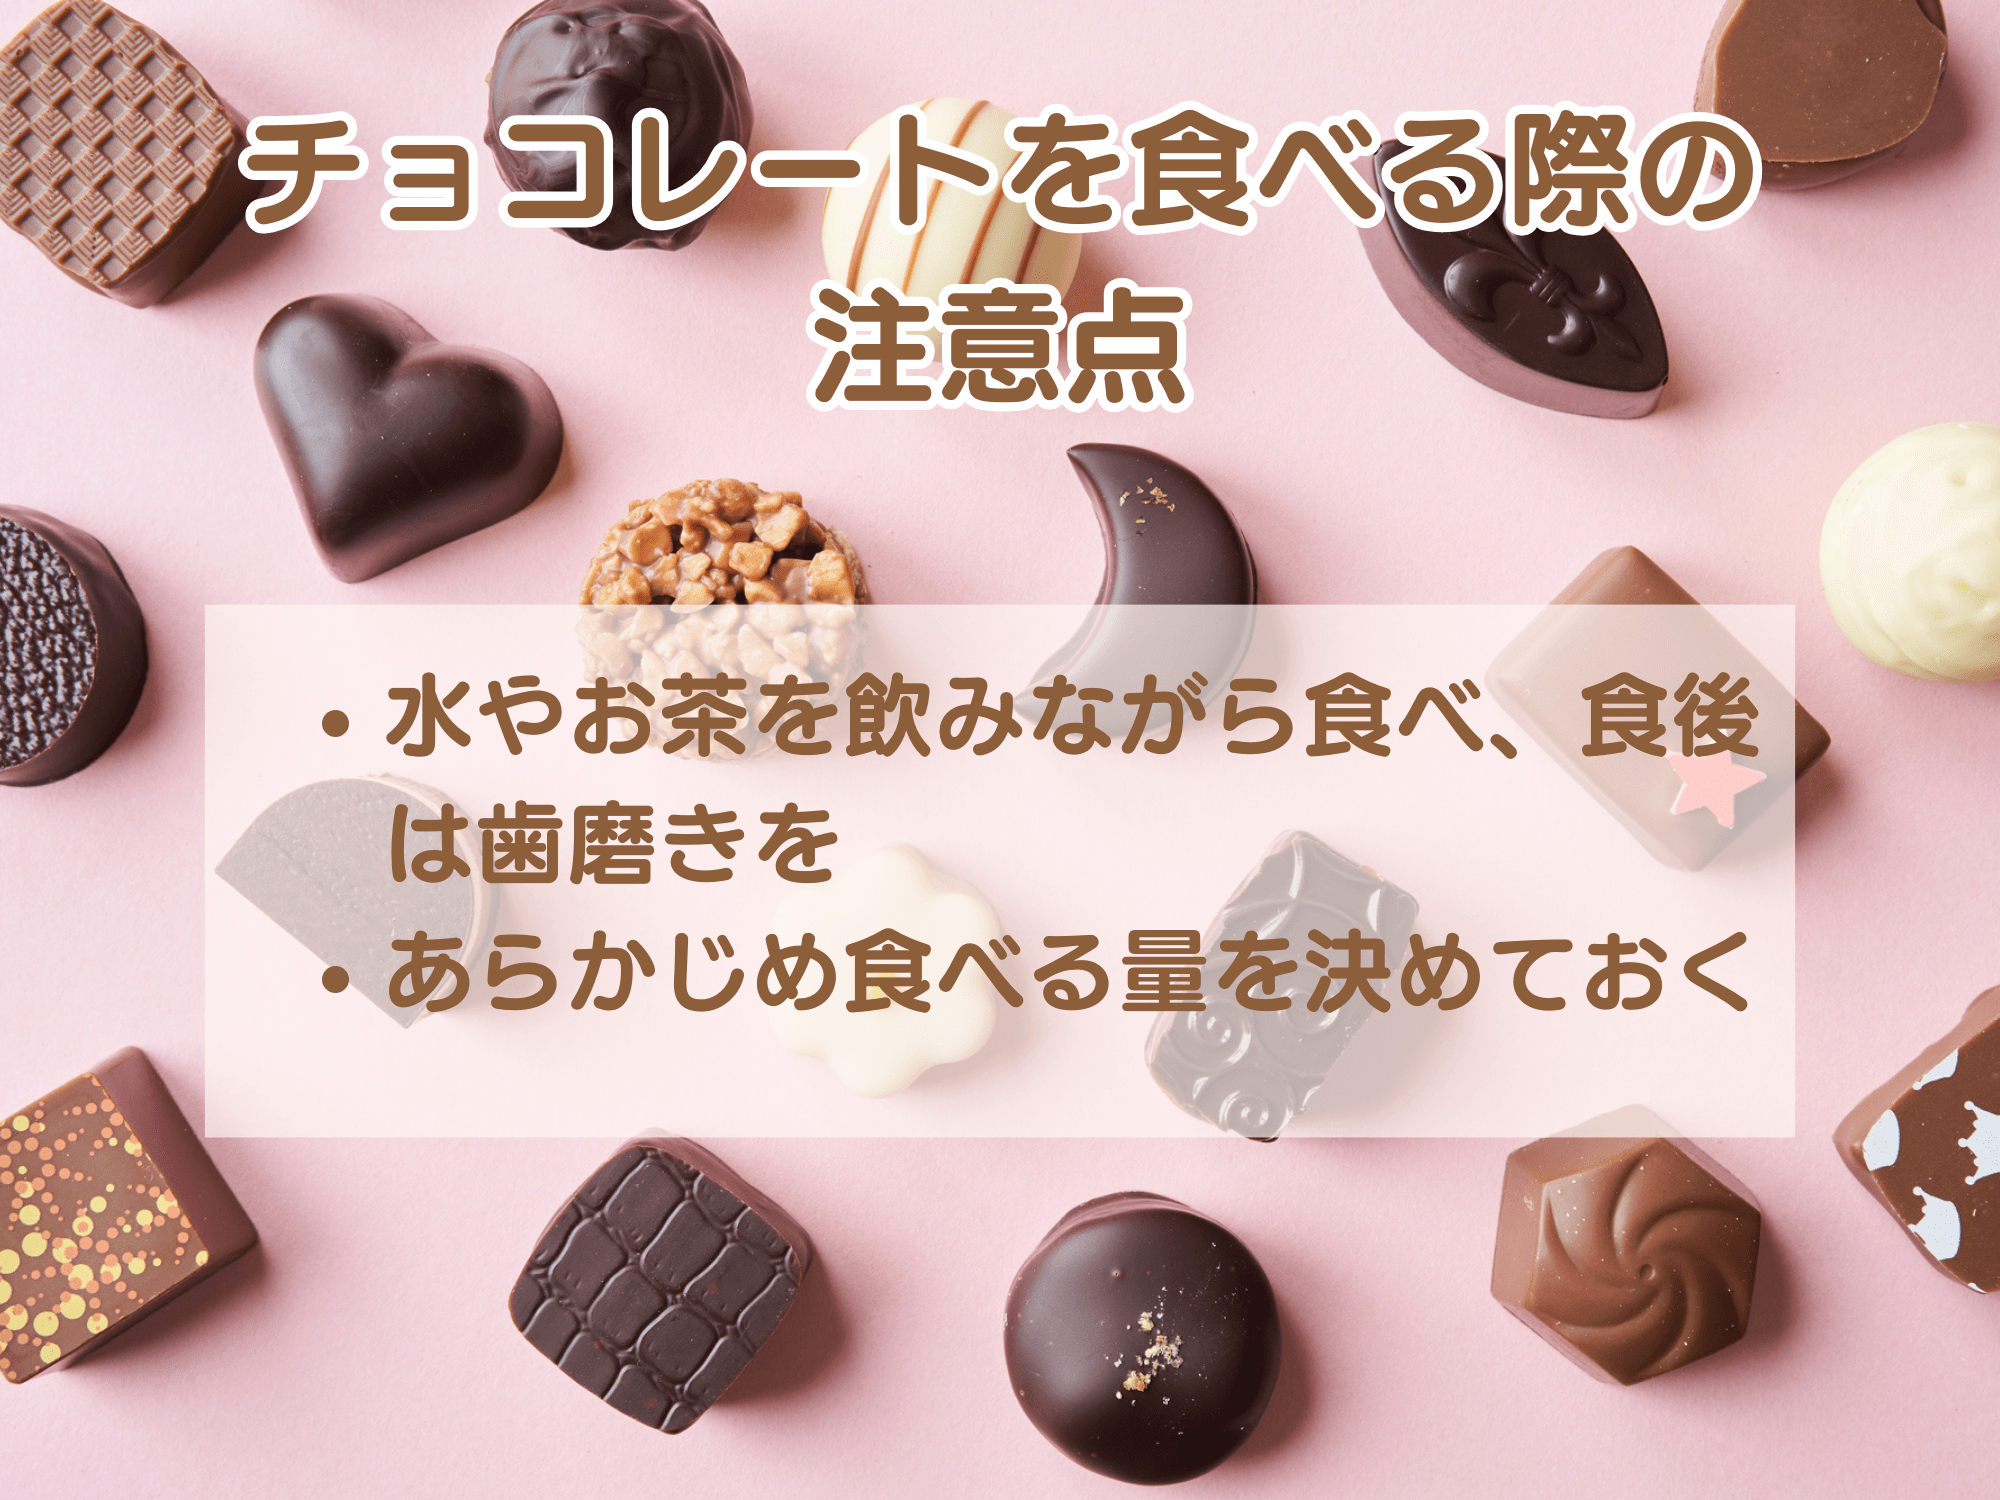 チョコレートを食べる際の注意点